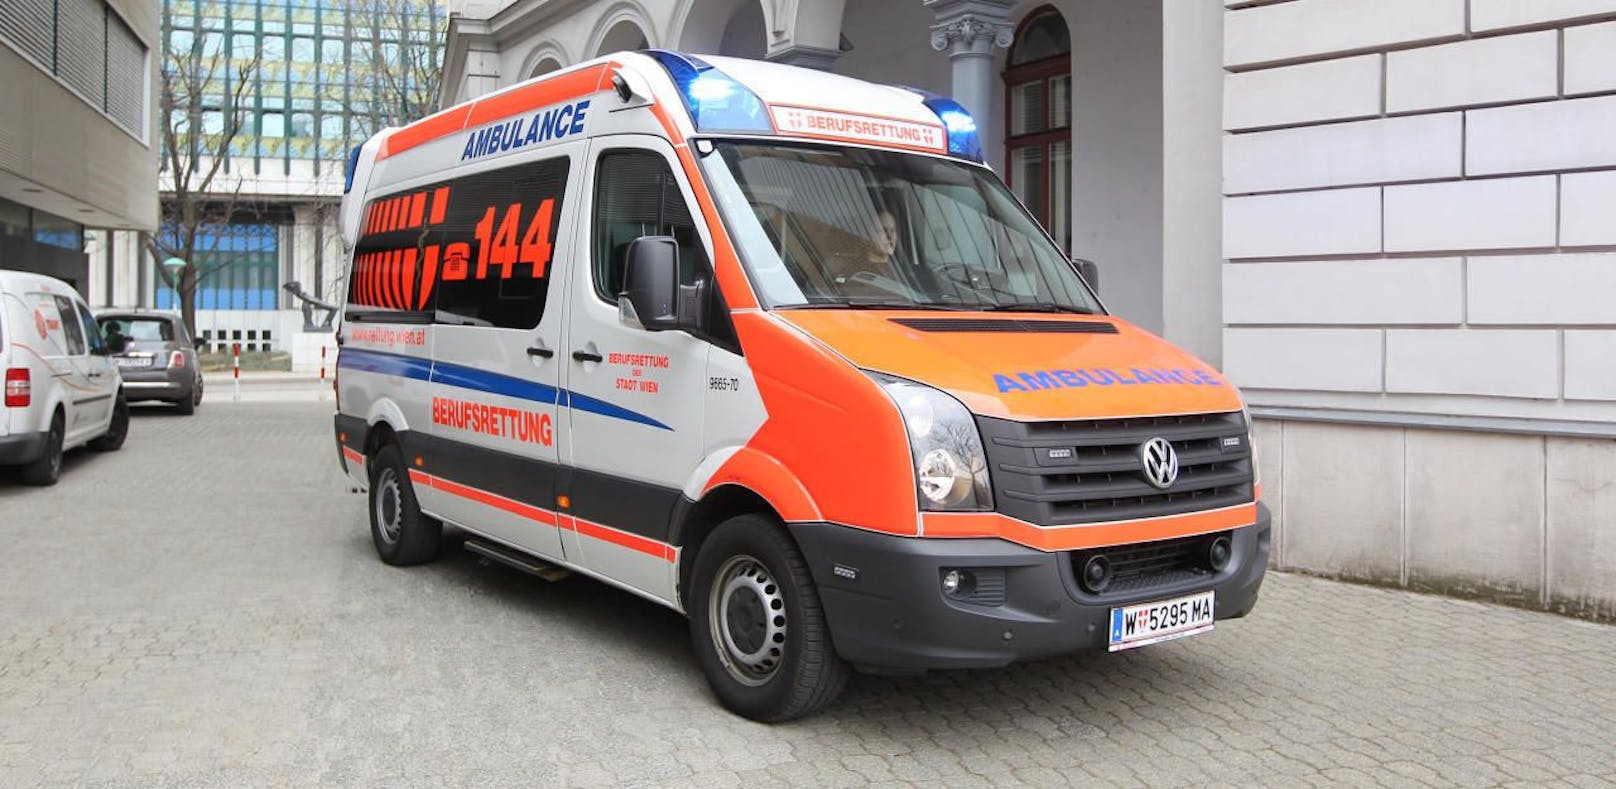 Die Wiener Berufsrettung brachte den verletzten 82-Jährigen ins Spital.